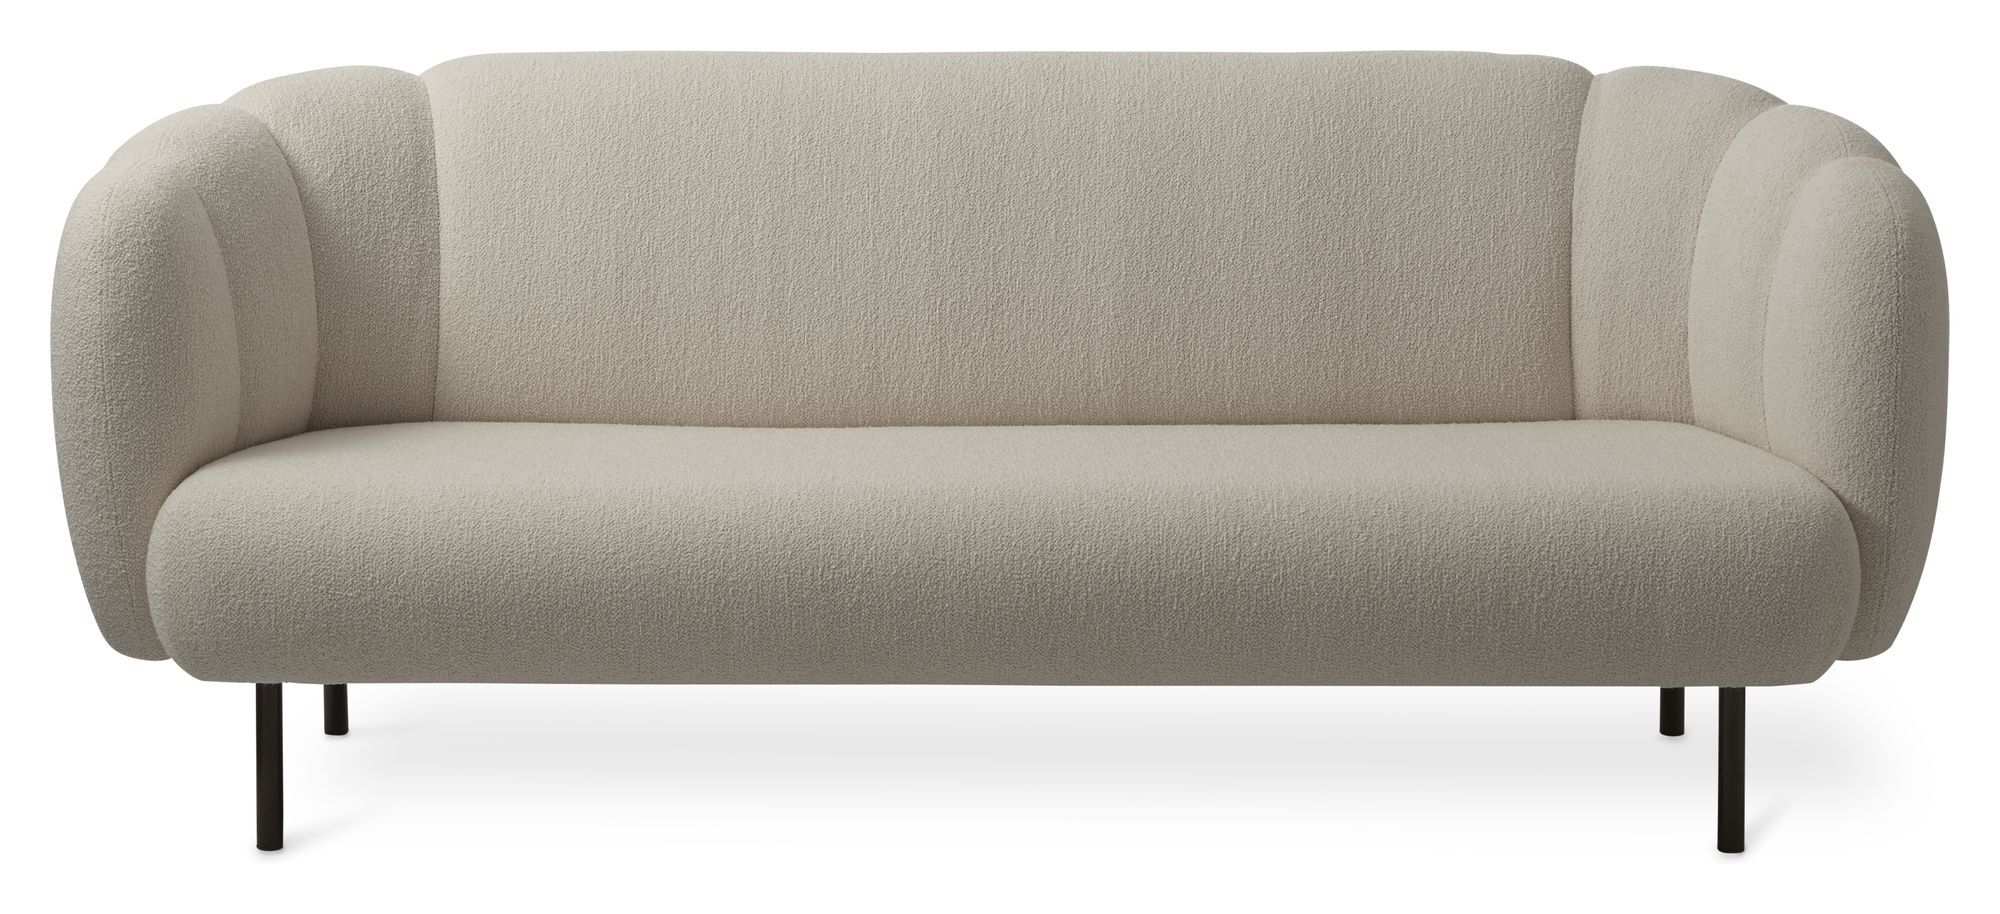 Warm Nordic CAPE stitch 3-pers. Sofa, Sand   Unoliving